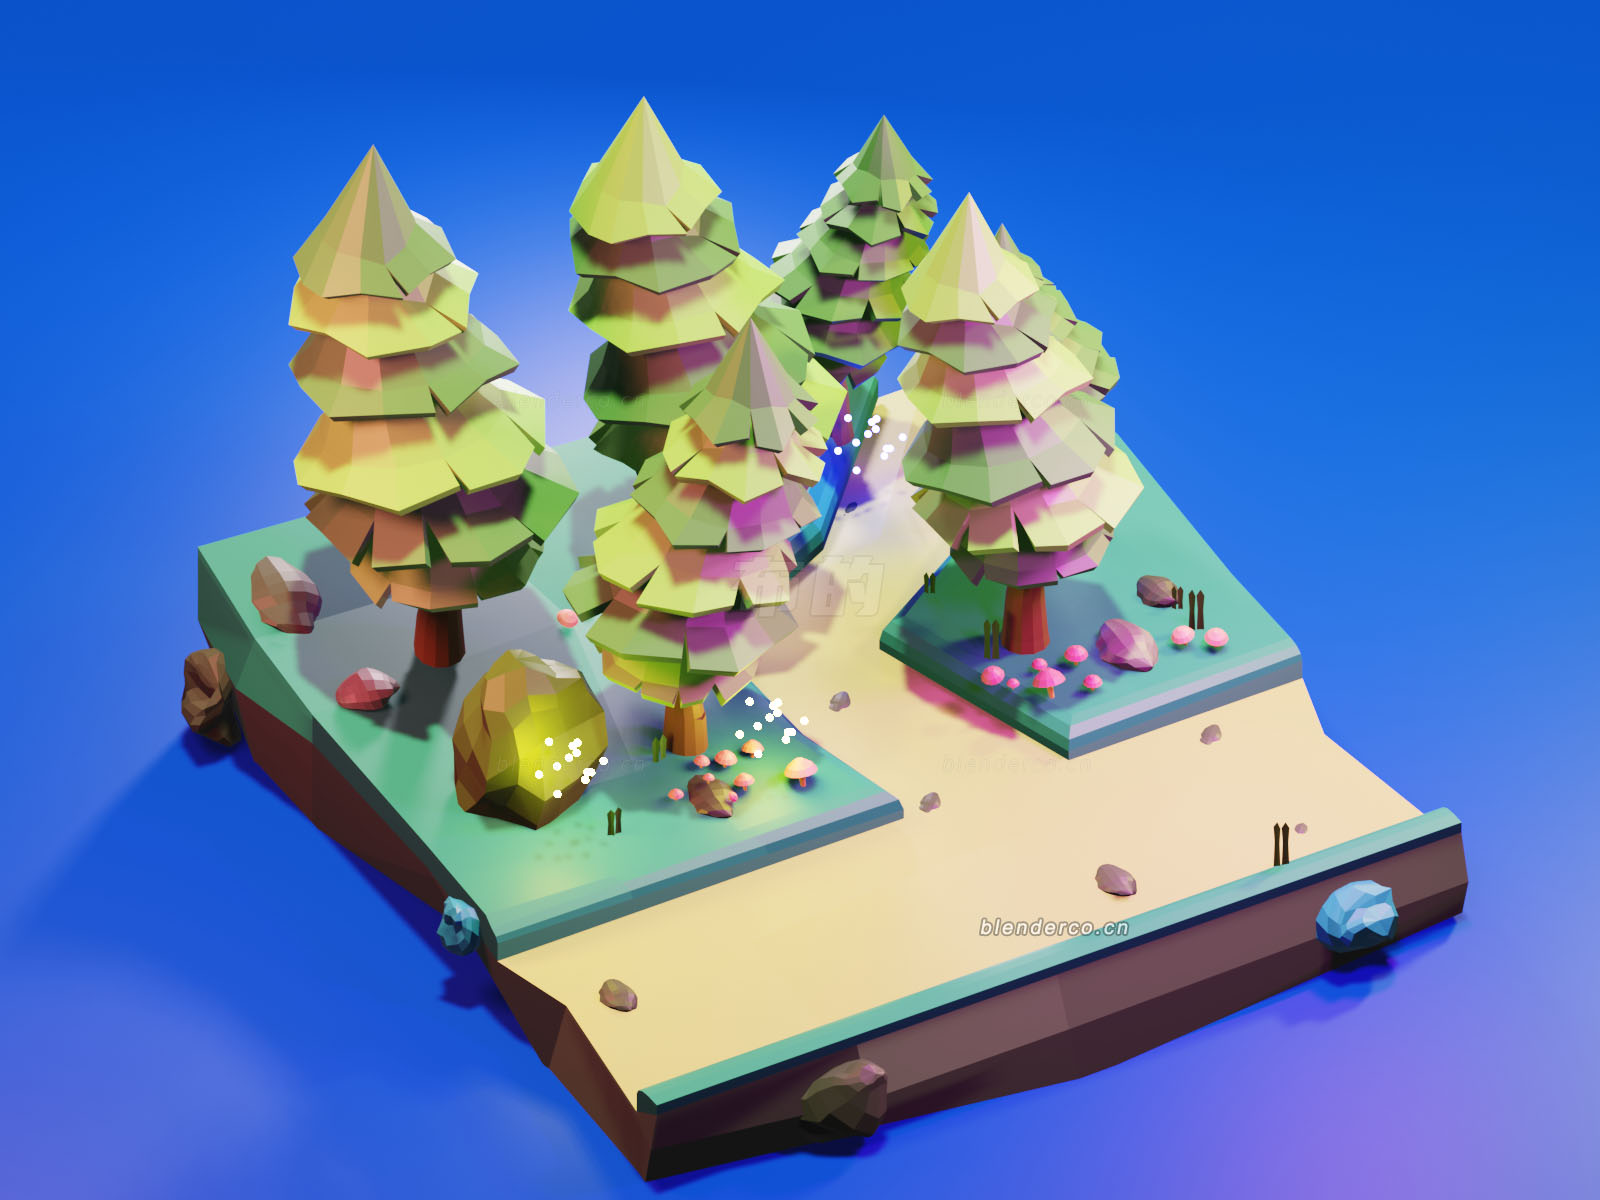 Blender森林模型